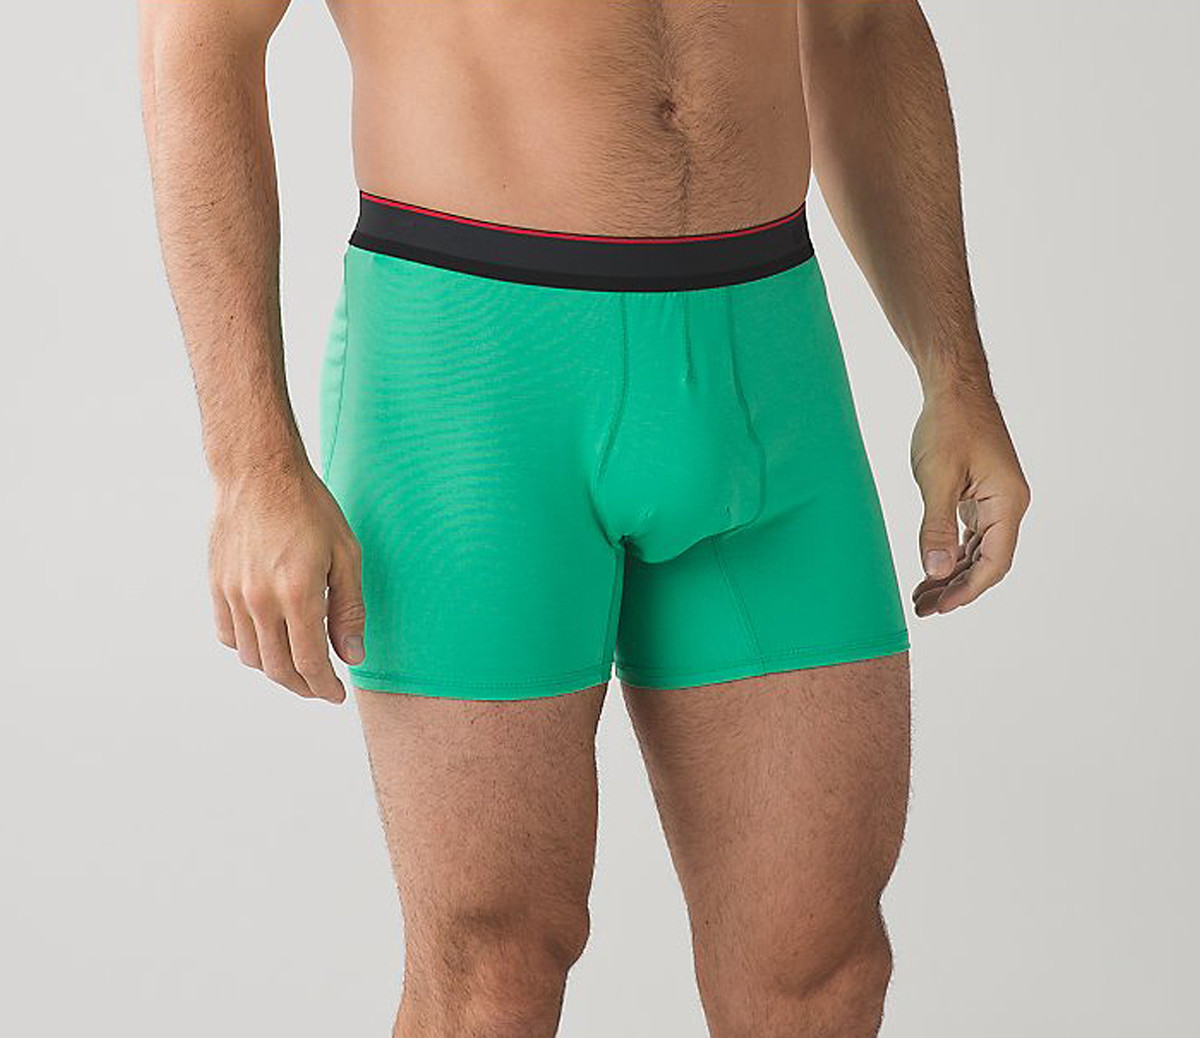 We Tried It: LV96 New Underwear Line For Men - AmongMen